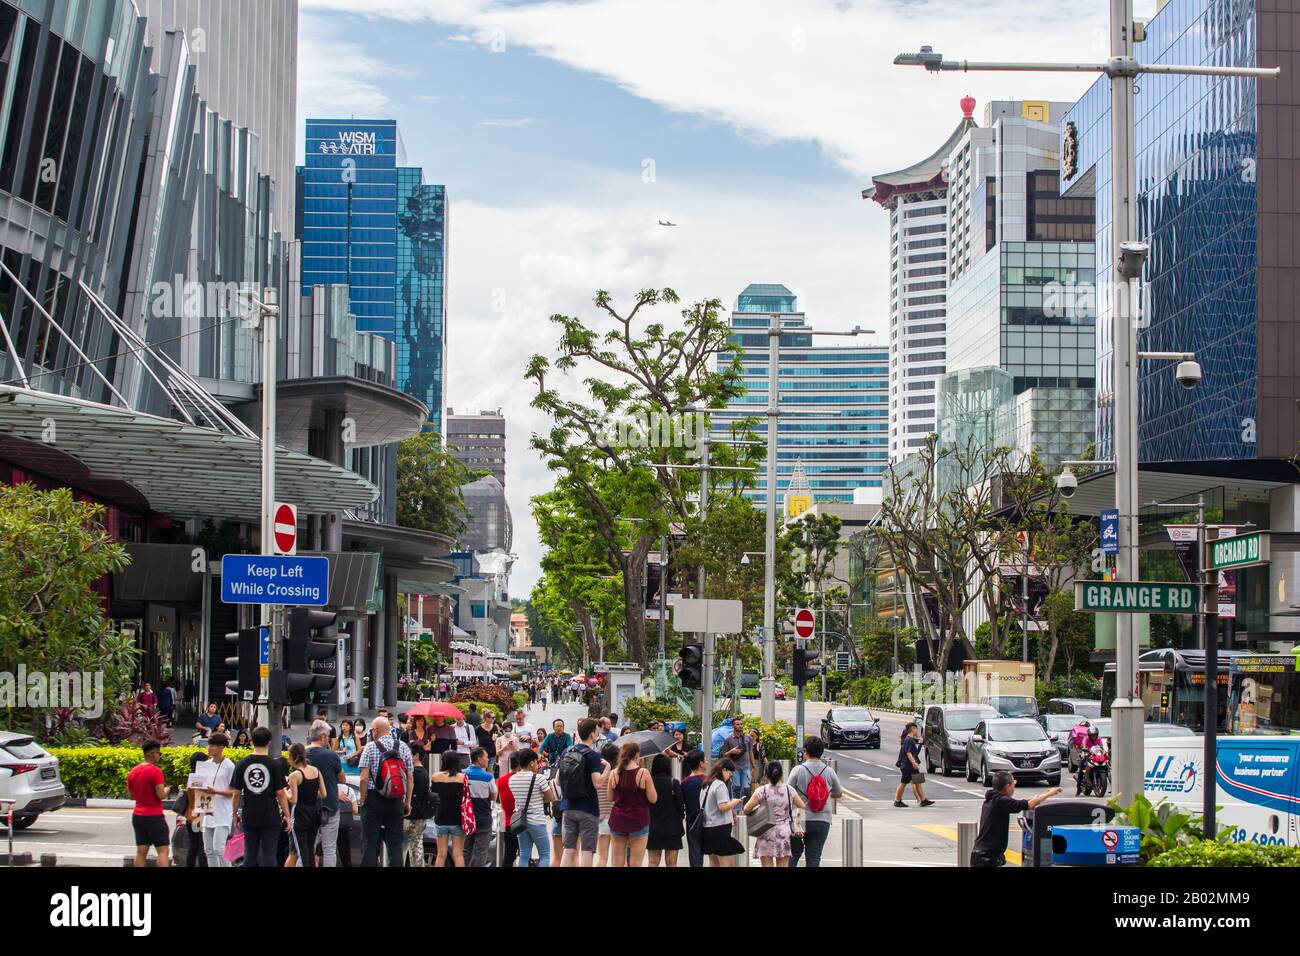 Straßenszenen der Orchard Road gefüllt mit Hotels, Menschenmenge, einem Einkaufsgürtel und einem Flugzeug passiert, um am Himmel vorbeifliegen. Singapur. Stockfoto